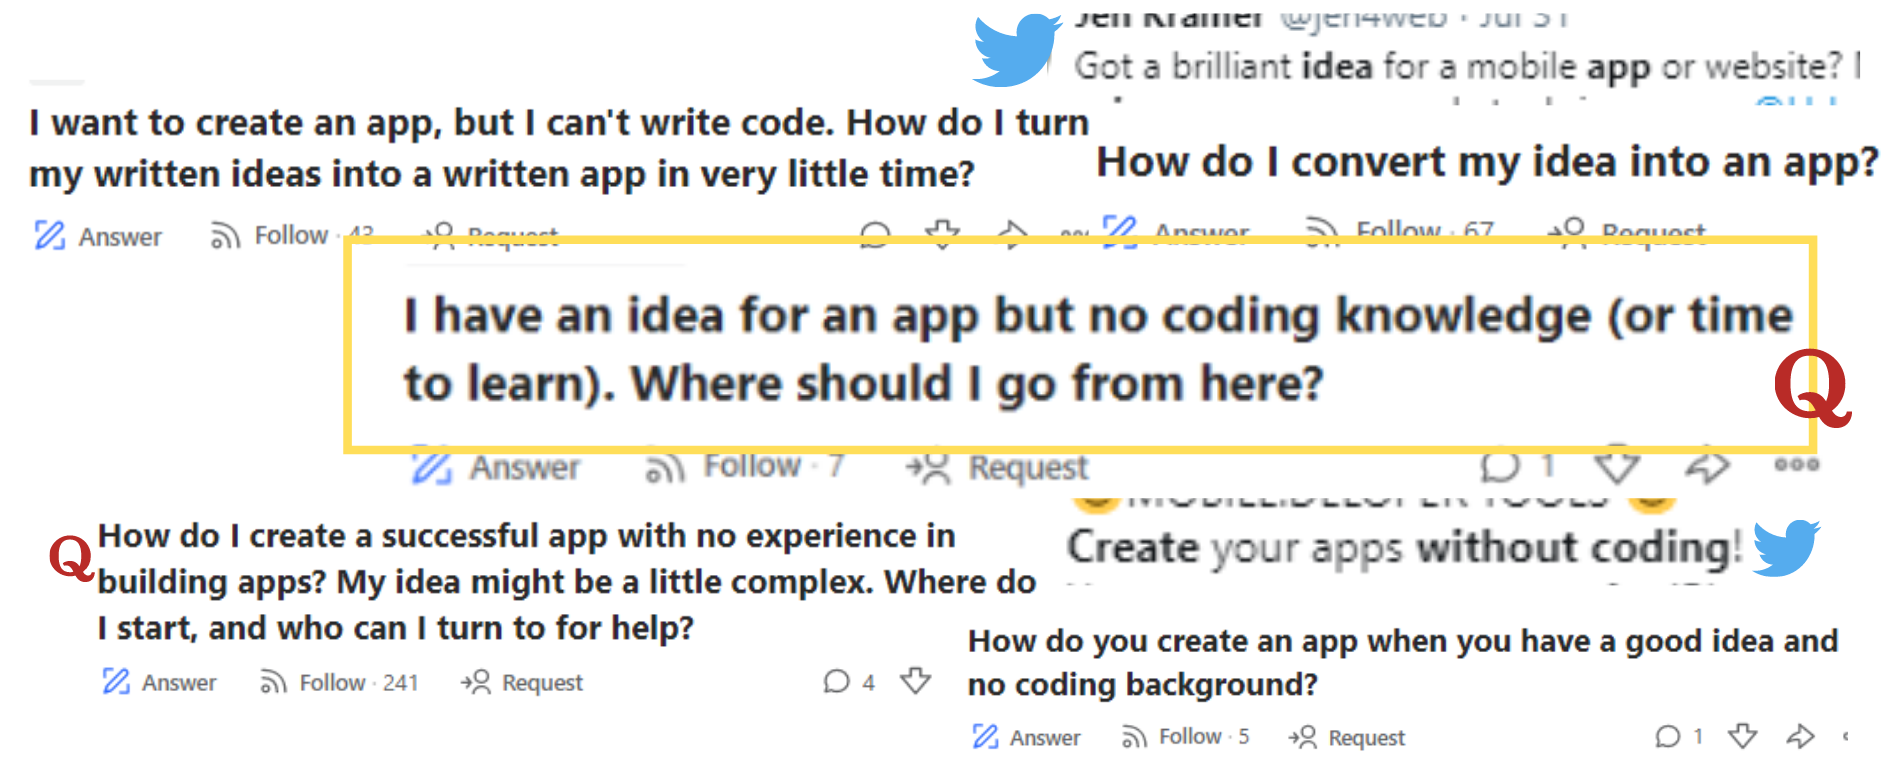 Idea for an app